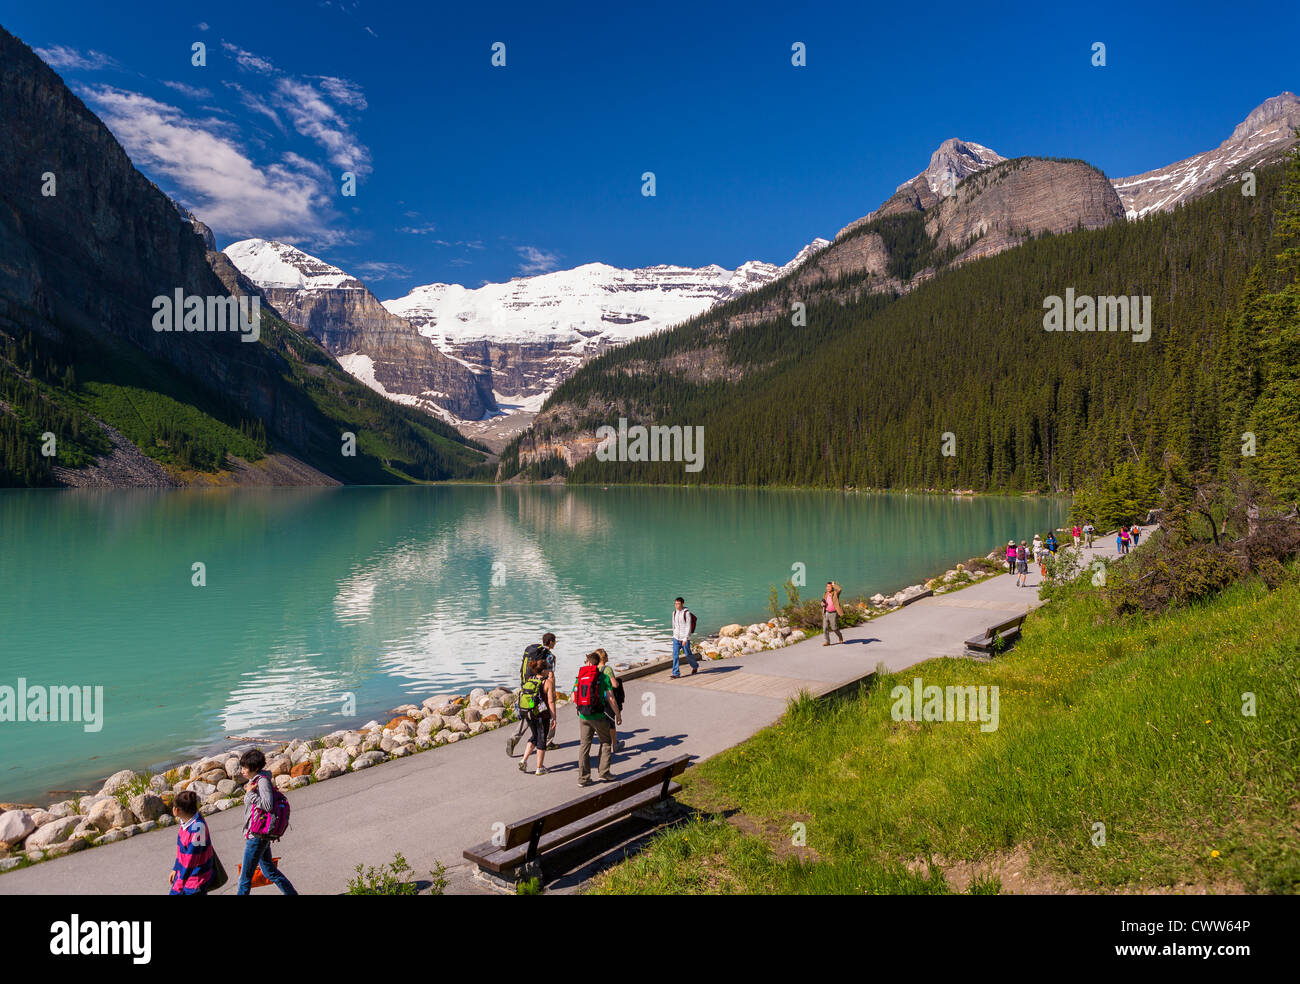 ALBERTA, CANADA - i turisti sul percorso presso il Lago Louise, un lago glaciale nel Parco Nazionale di Banff. Foto Stock